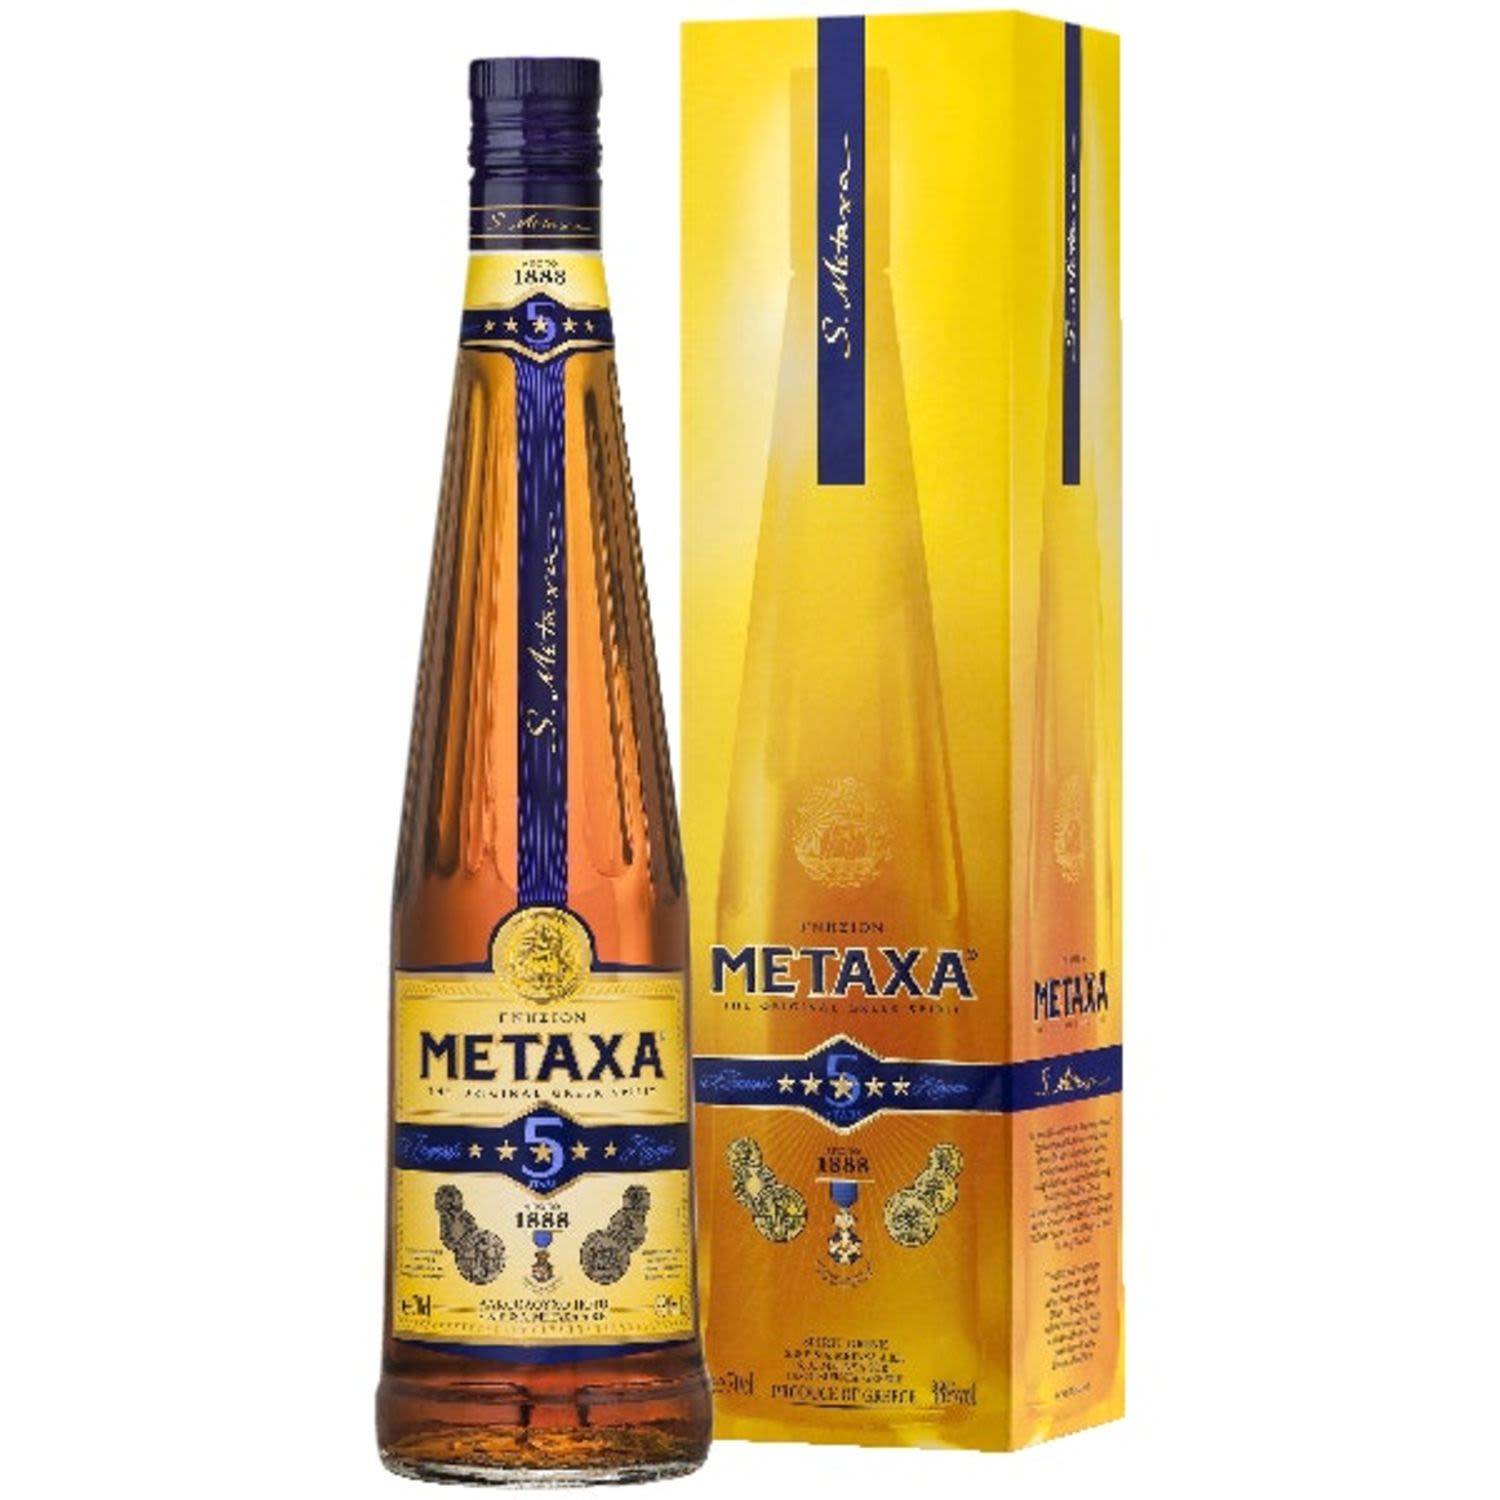 Metaxa 5 Star 700mL Bottle